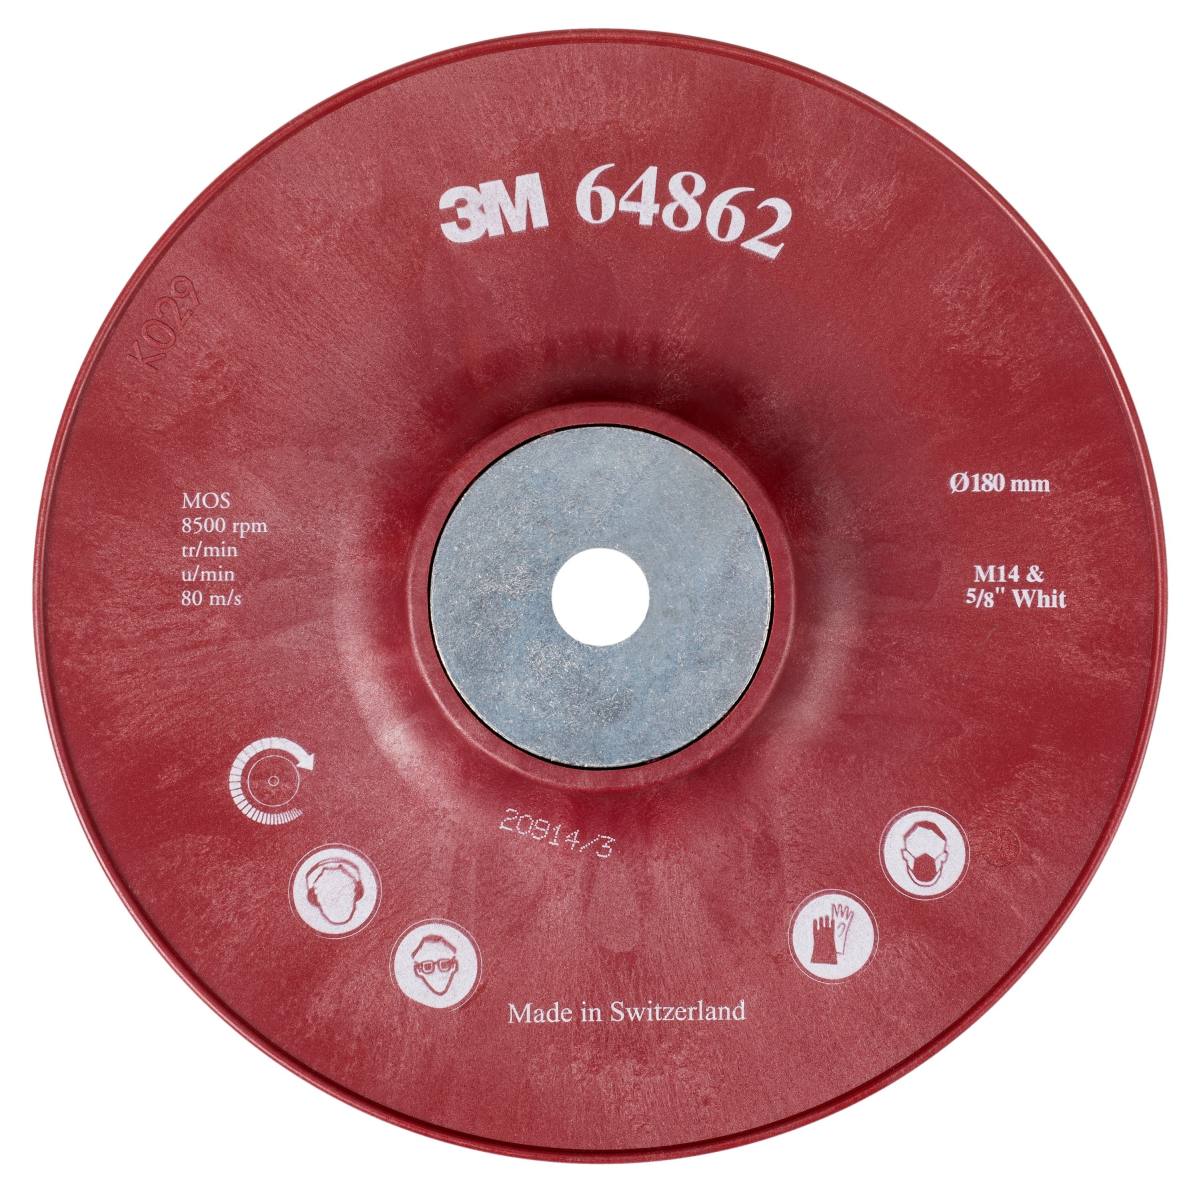 3M Plato soporte resistente, rojo, 180 mm, M14, estriado, muy duro #64862